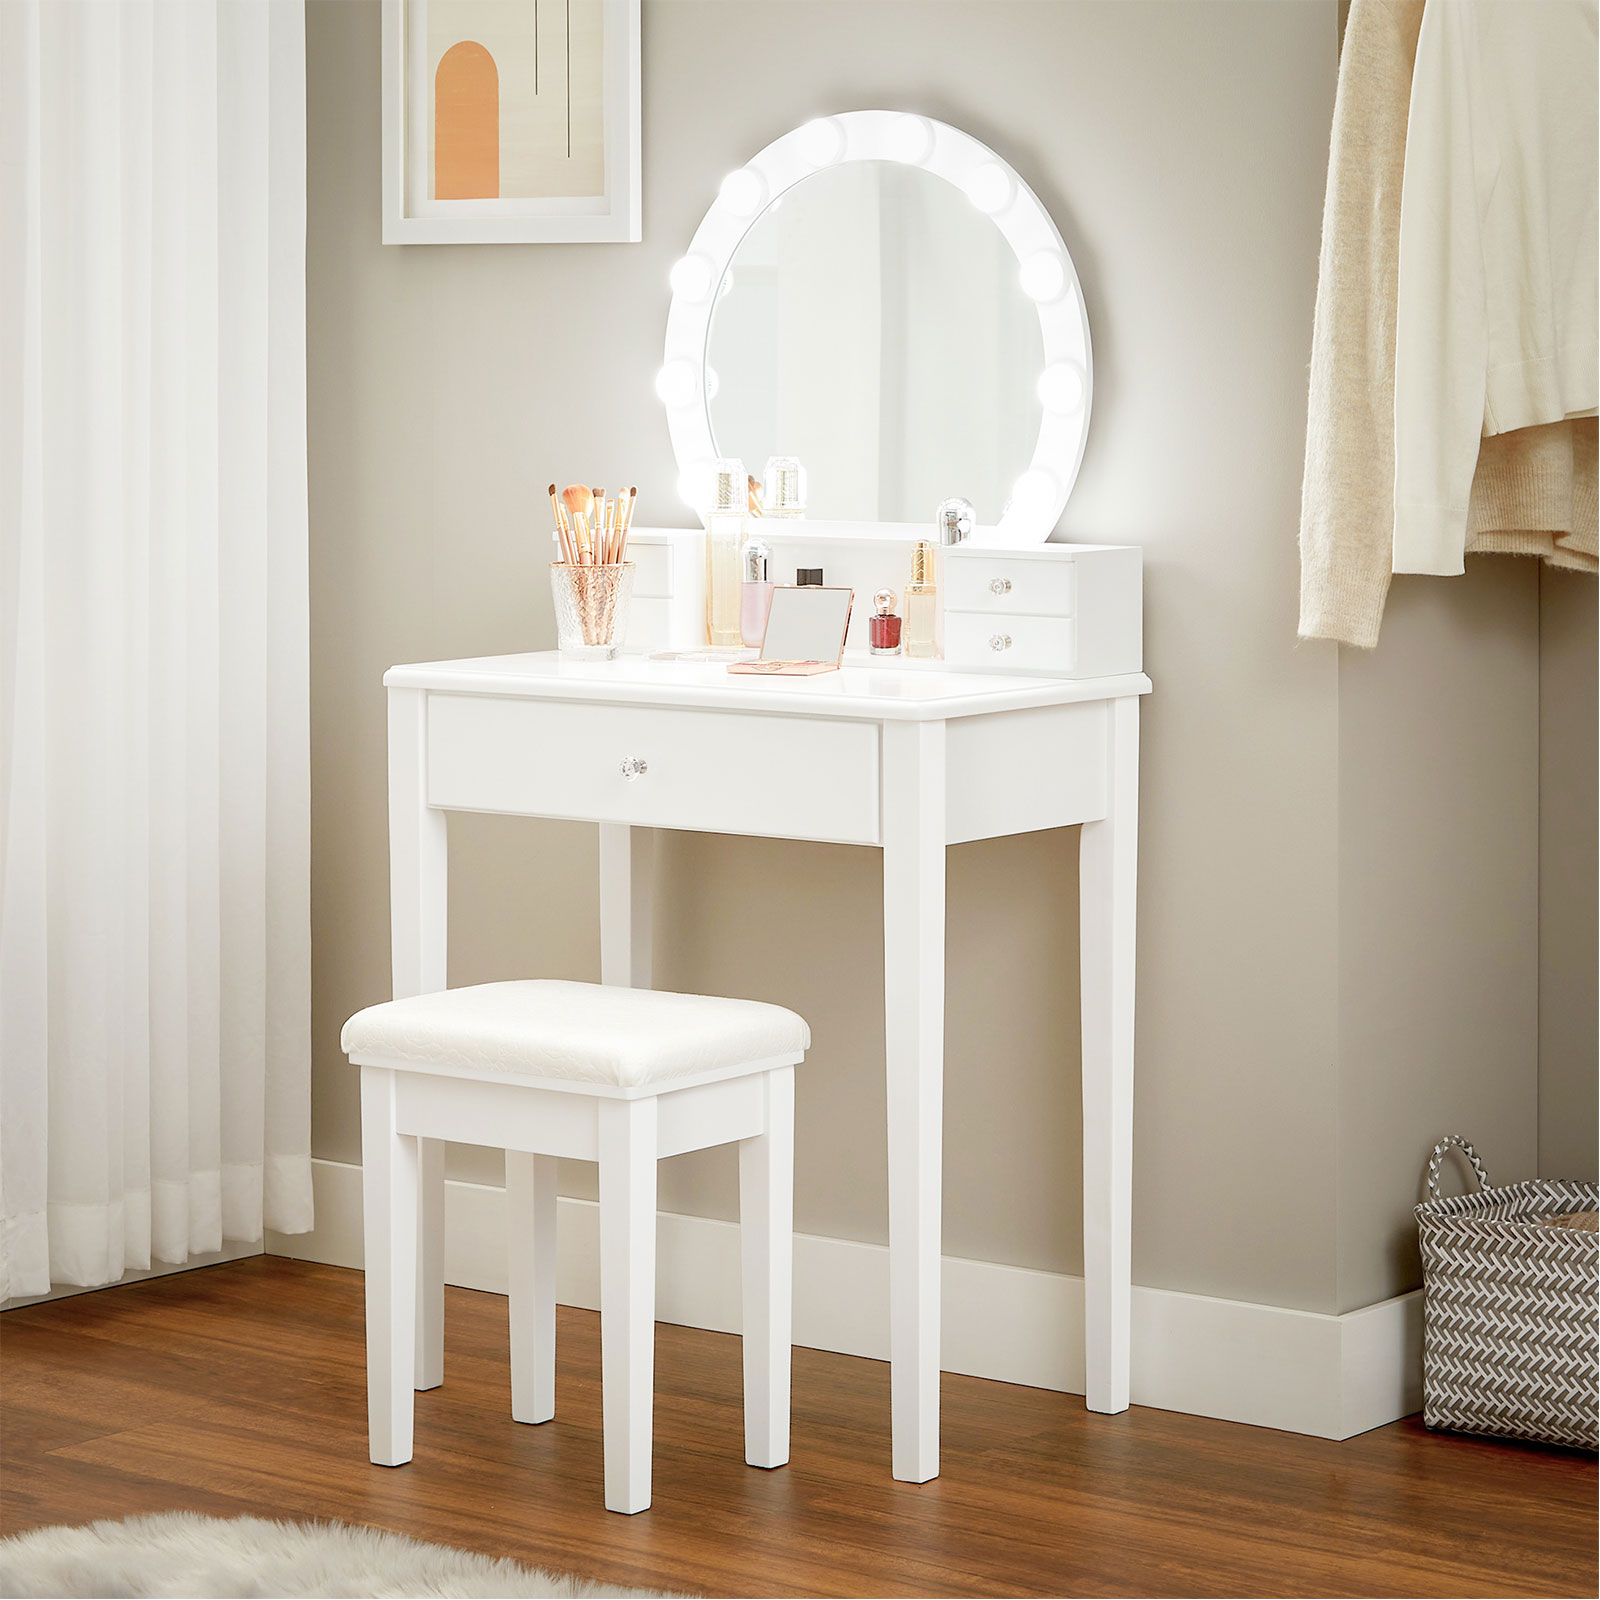 Kosmetinis staliukas baltas su kėde ir apšviestu apvaliu veidrodžiu 3